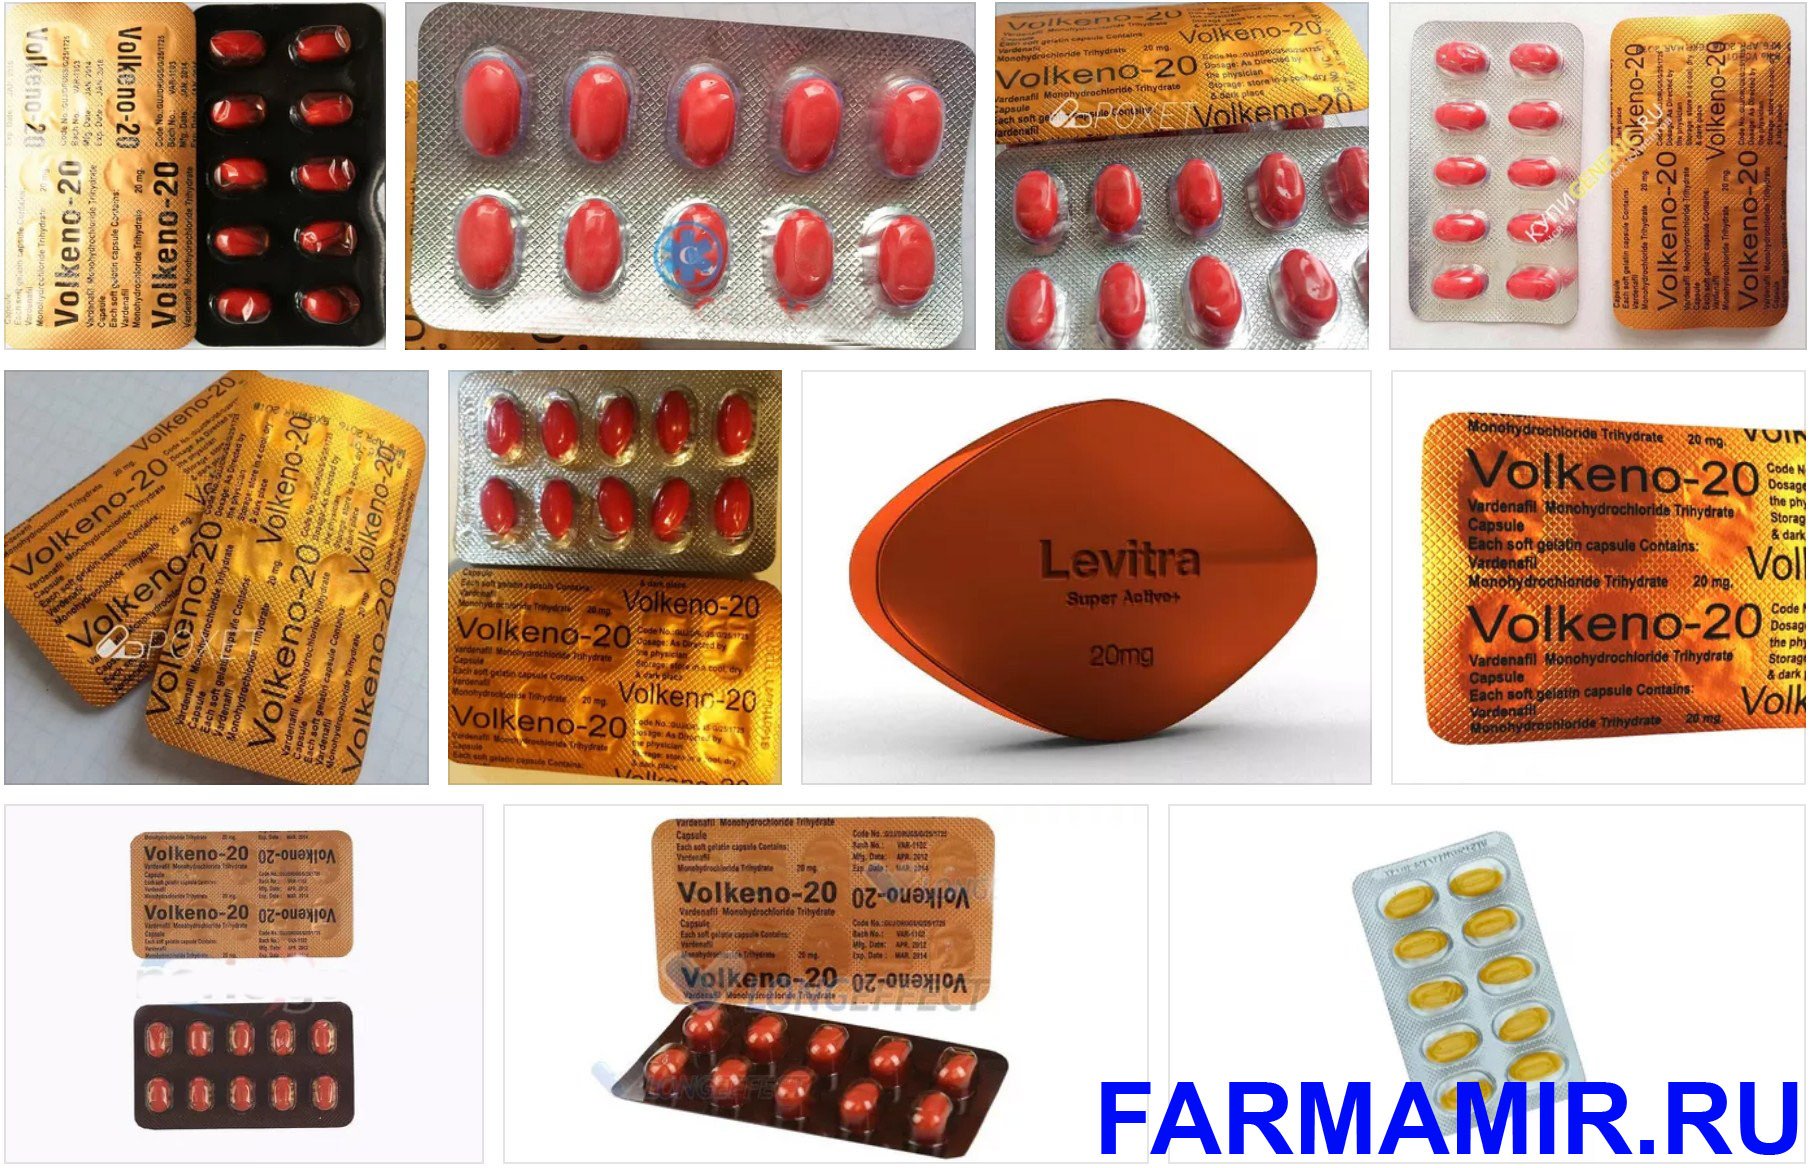 Левитра Super Active 20 мг 